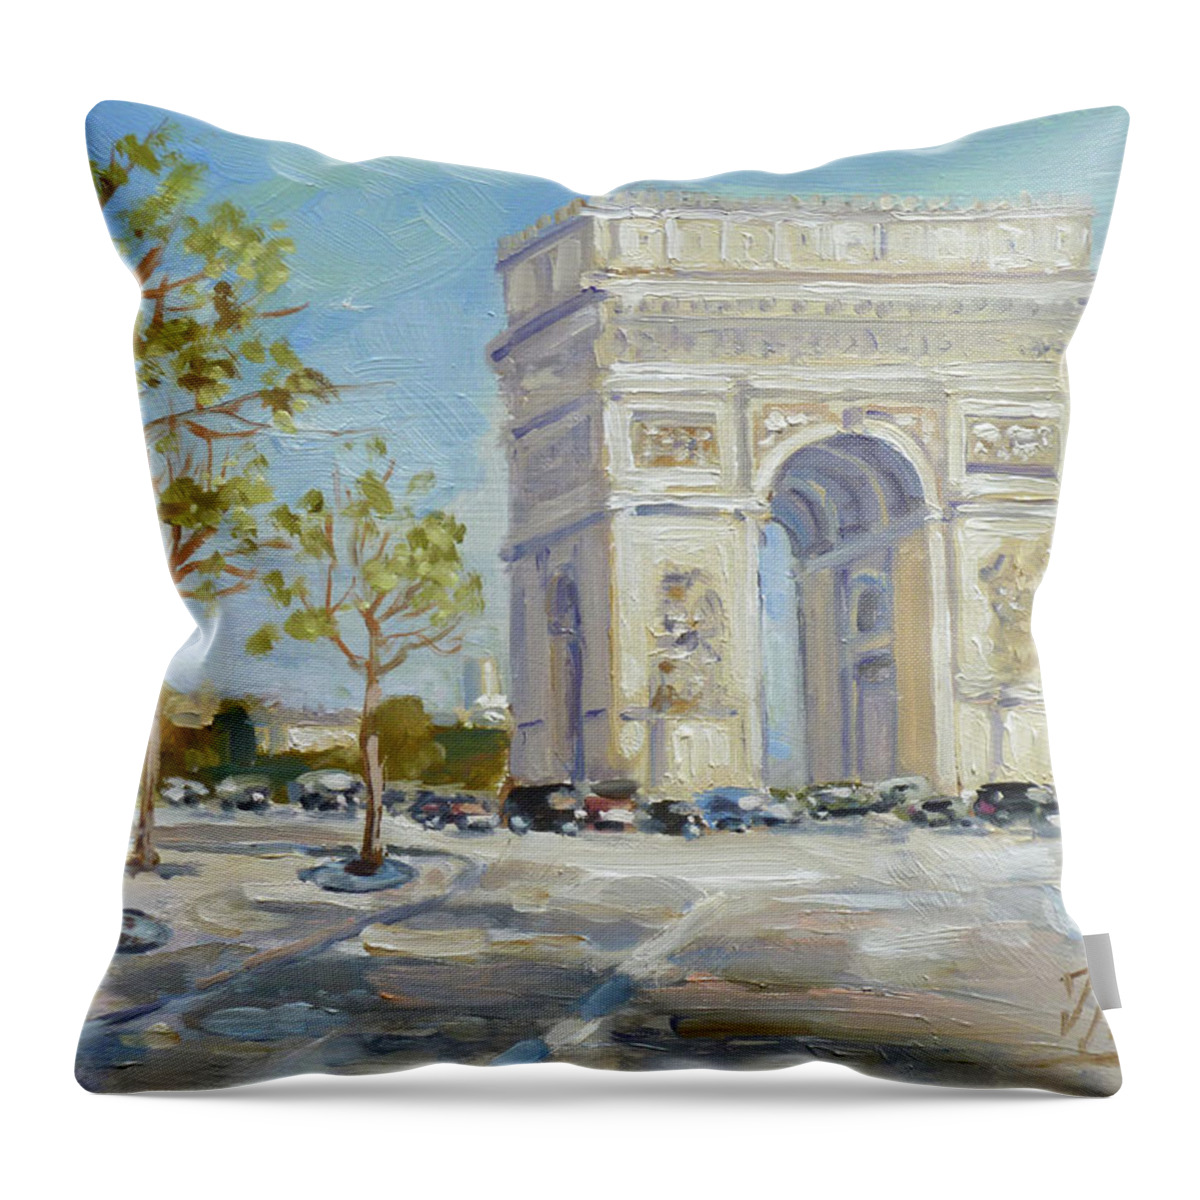 Paris Throw Pillow featuring the painting Arc de Triomphe, Paris #2 by Irek Szelag